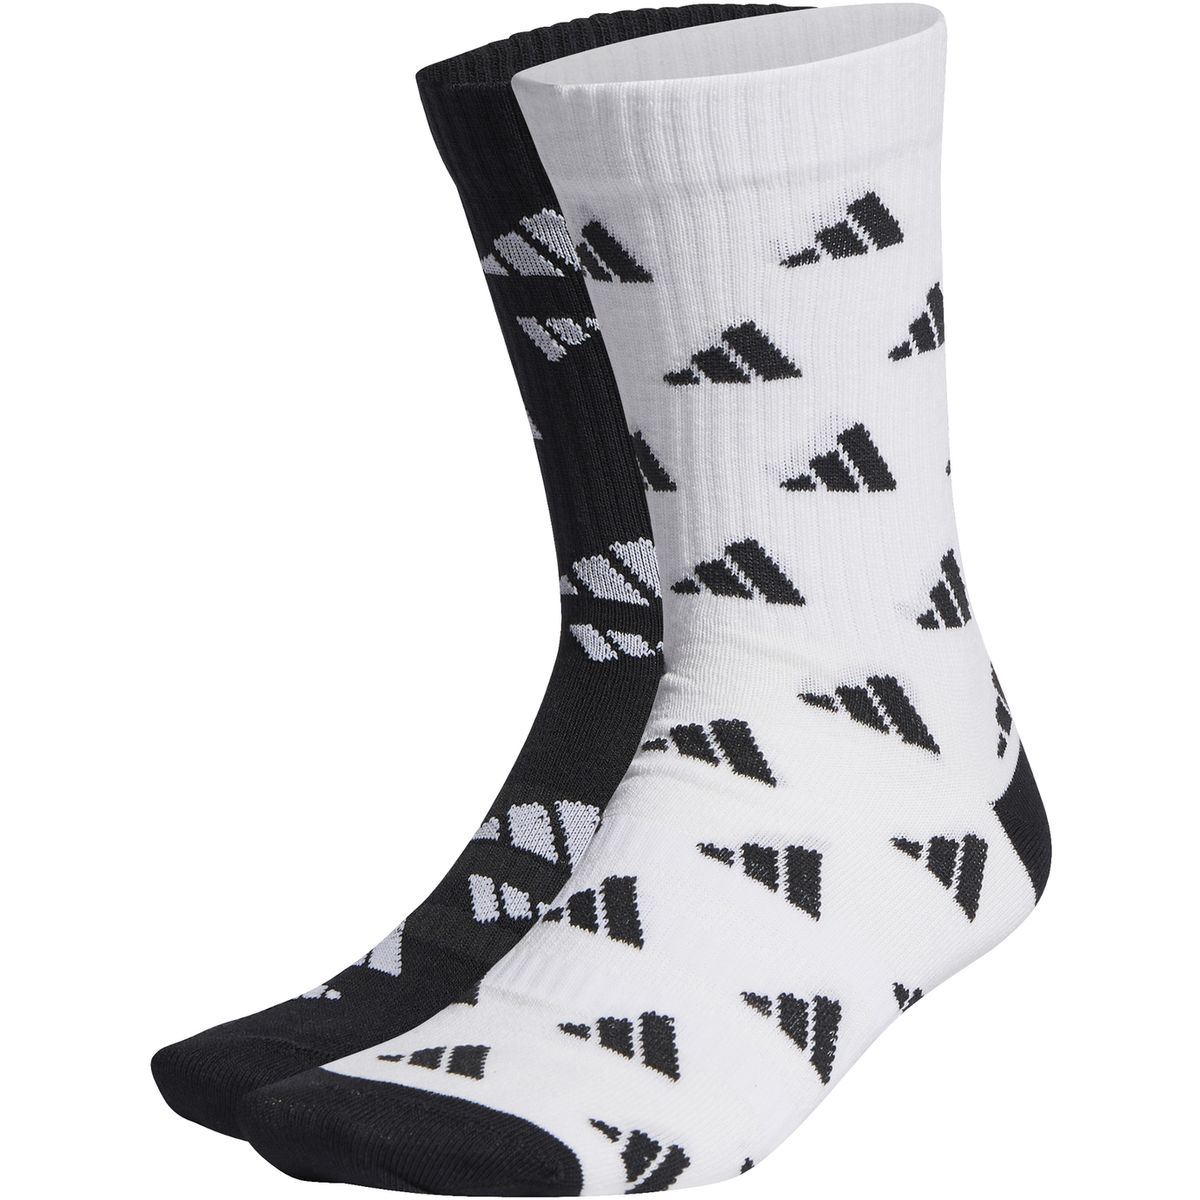 Adidas 3-Streifen Graphic Sport Socken, 2 Paar Unisex